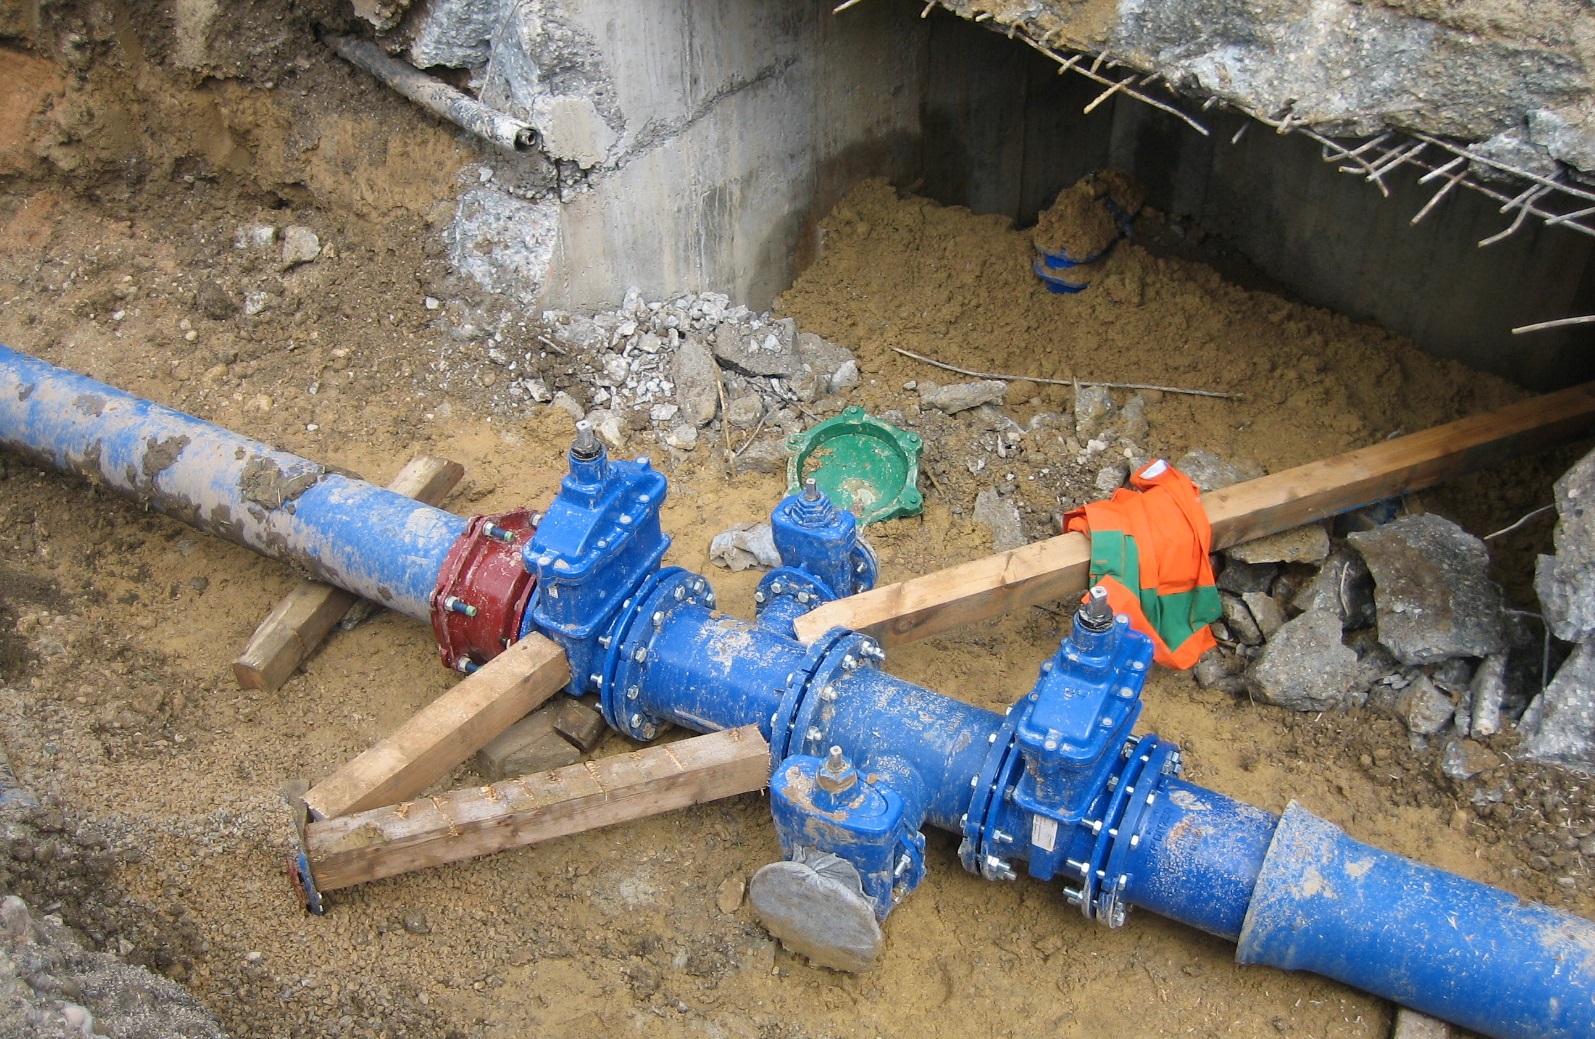 Obnove vodovodnega omrežja so nujne za zagotavljanje kakovostne vodooskrbe.jpg